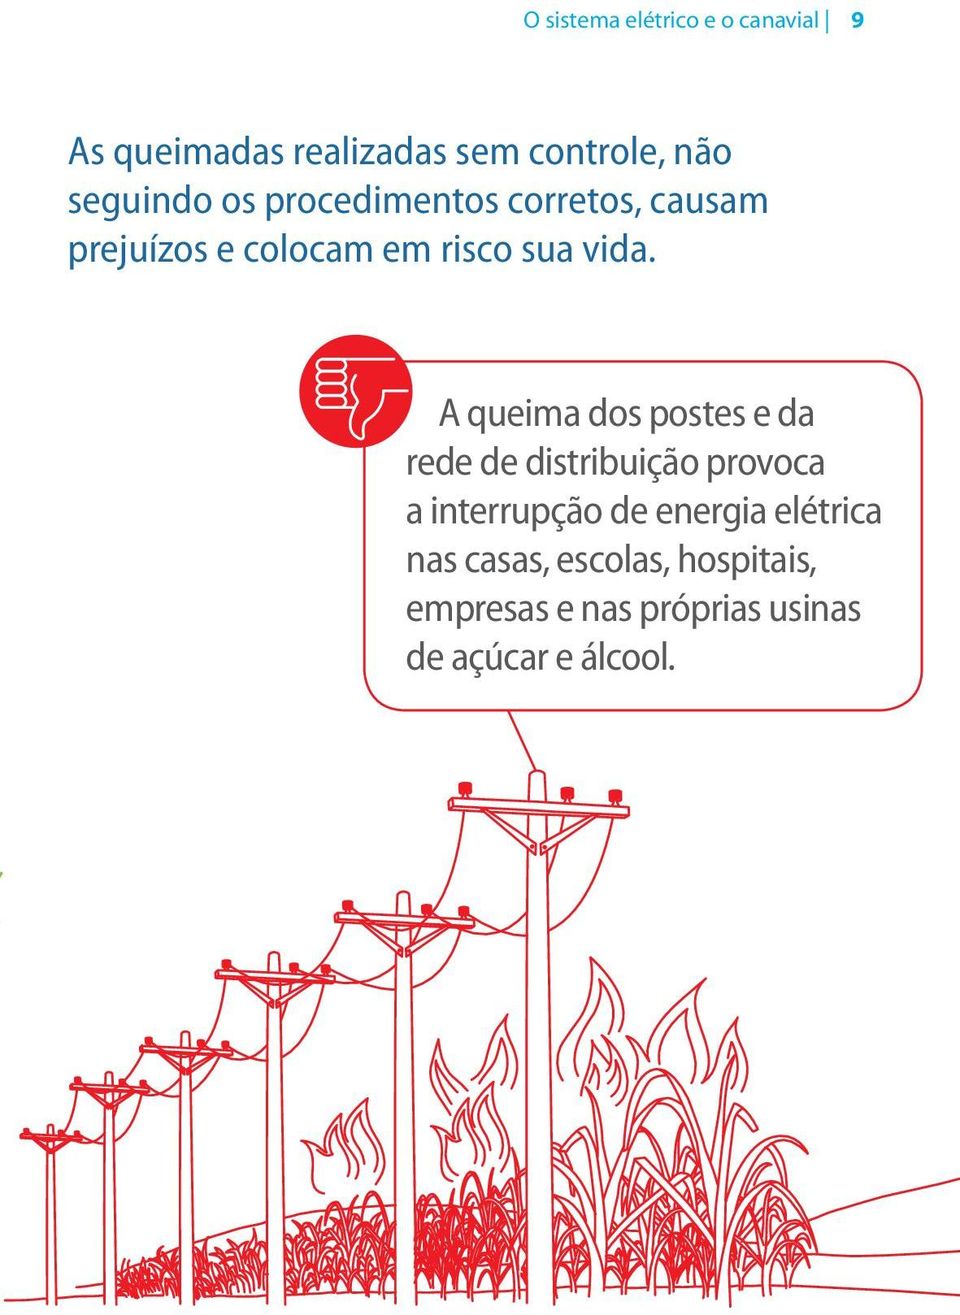 A queima dos postes e da rede de distribuição provoca a interrupção de energia